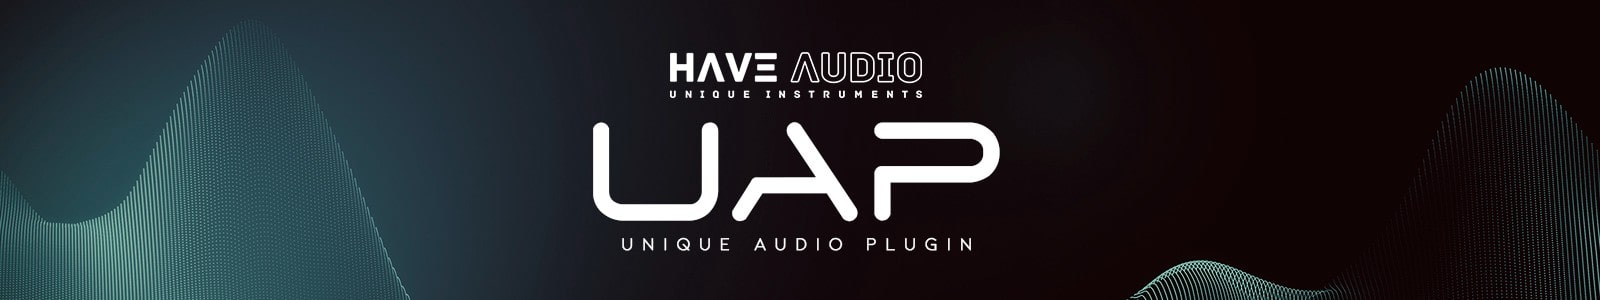 Have Audio Unique Audio Plugin